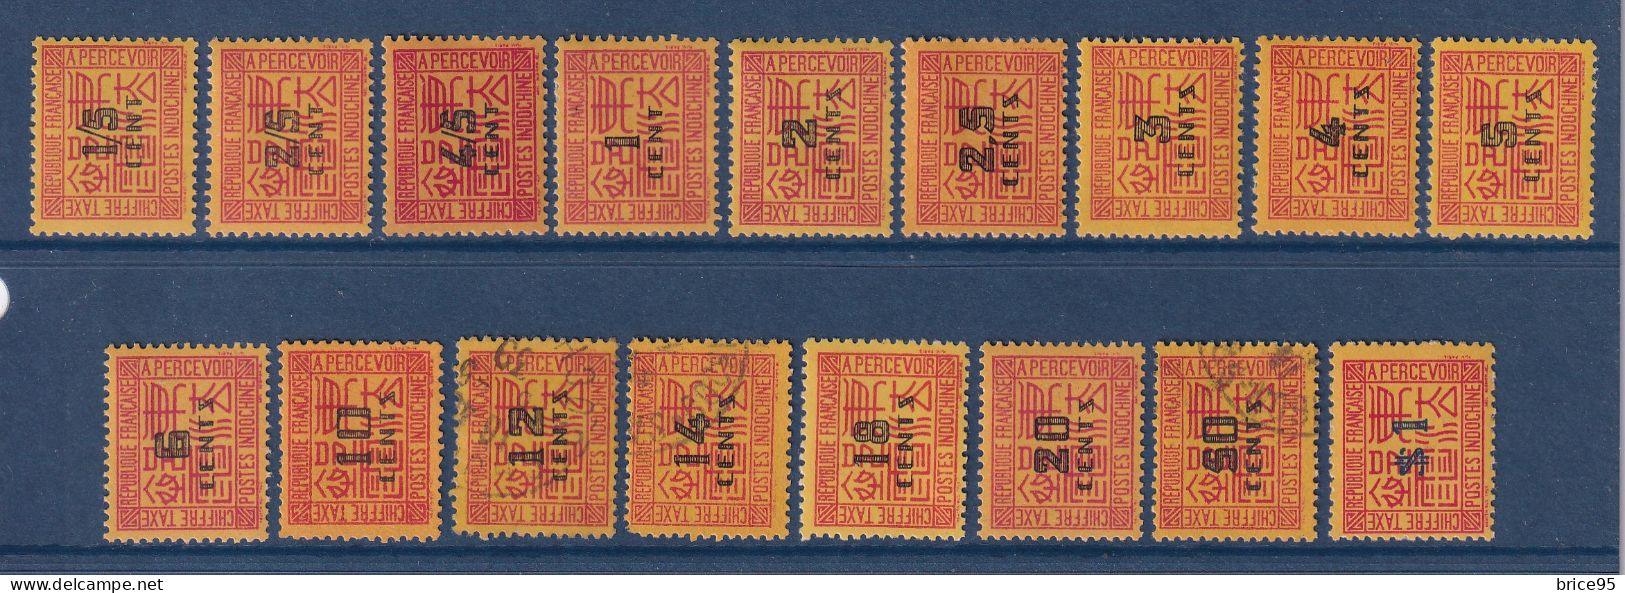 Indochine - Taxe - YT N° 57 à 73 - Neuf Avec Charnière Et Oblitéré - Manque N° 74 - 1931 à 1941 - Postage Due